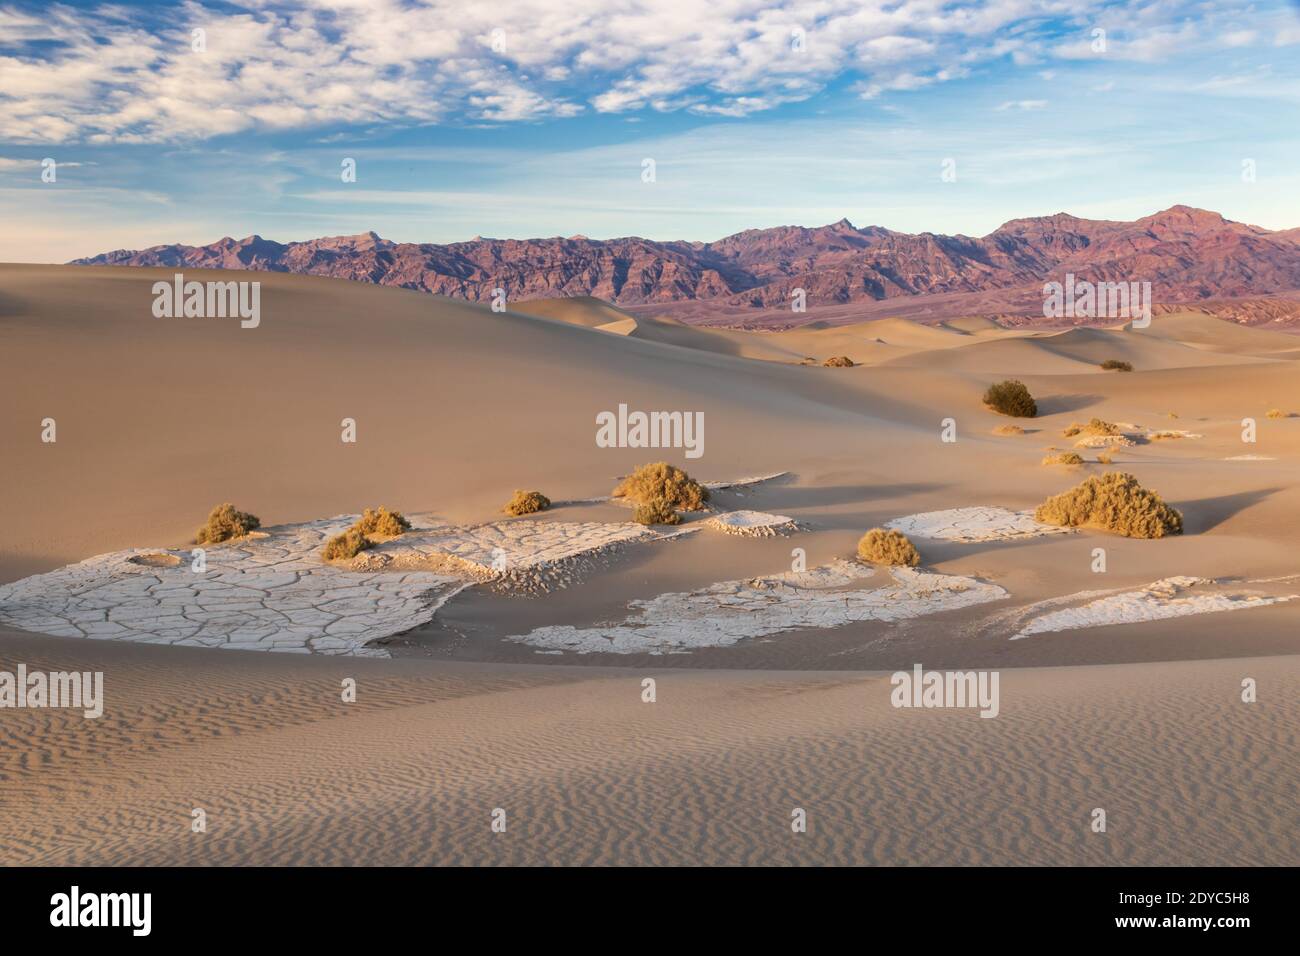 Dunes de sable, dans la vallée de la mort, Californie. Motifs ondulés sur le sable; plantes et dépôts minéraux entre les dunes. Banque D'Images